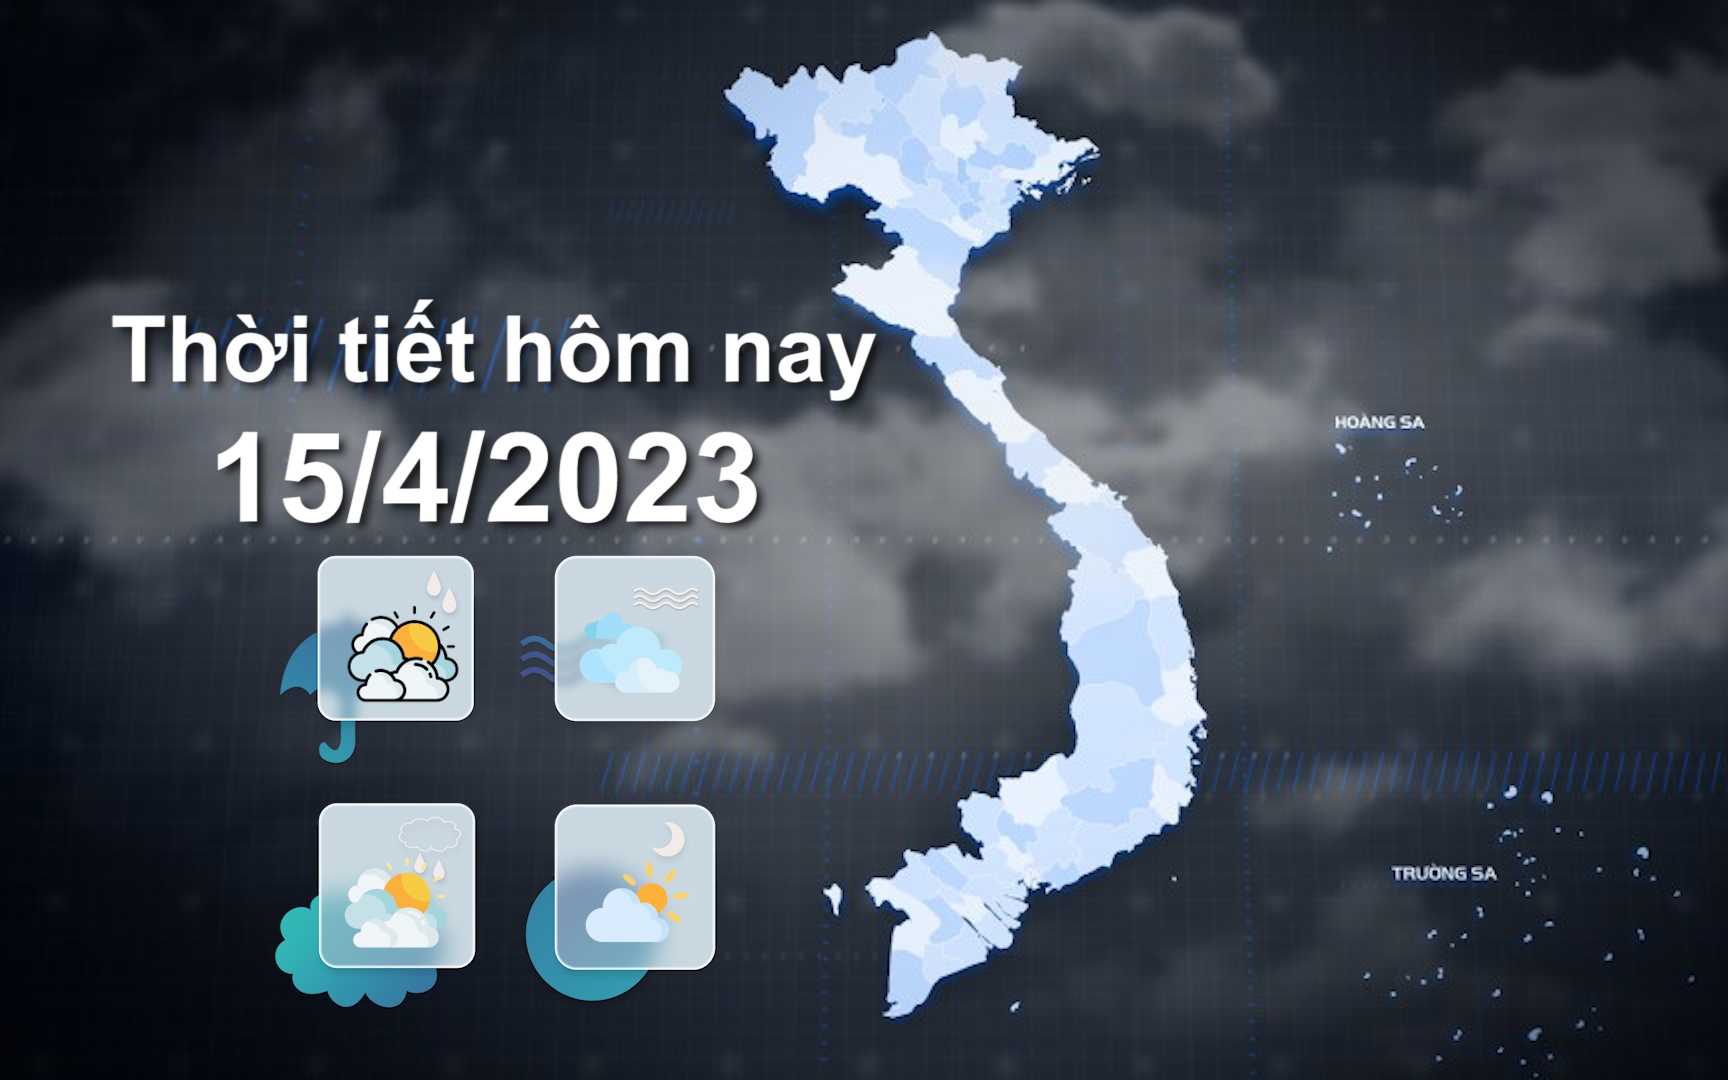 Thời tiết hôm nay 15/4/2023: Bắc Bộ, Bắc Trung Bộ có mưa, cục bộ mưa to